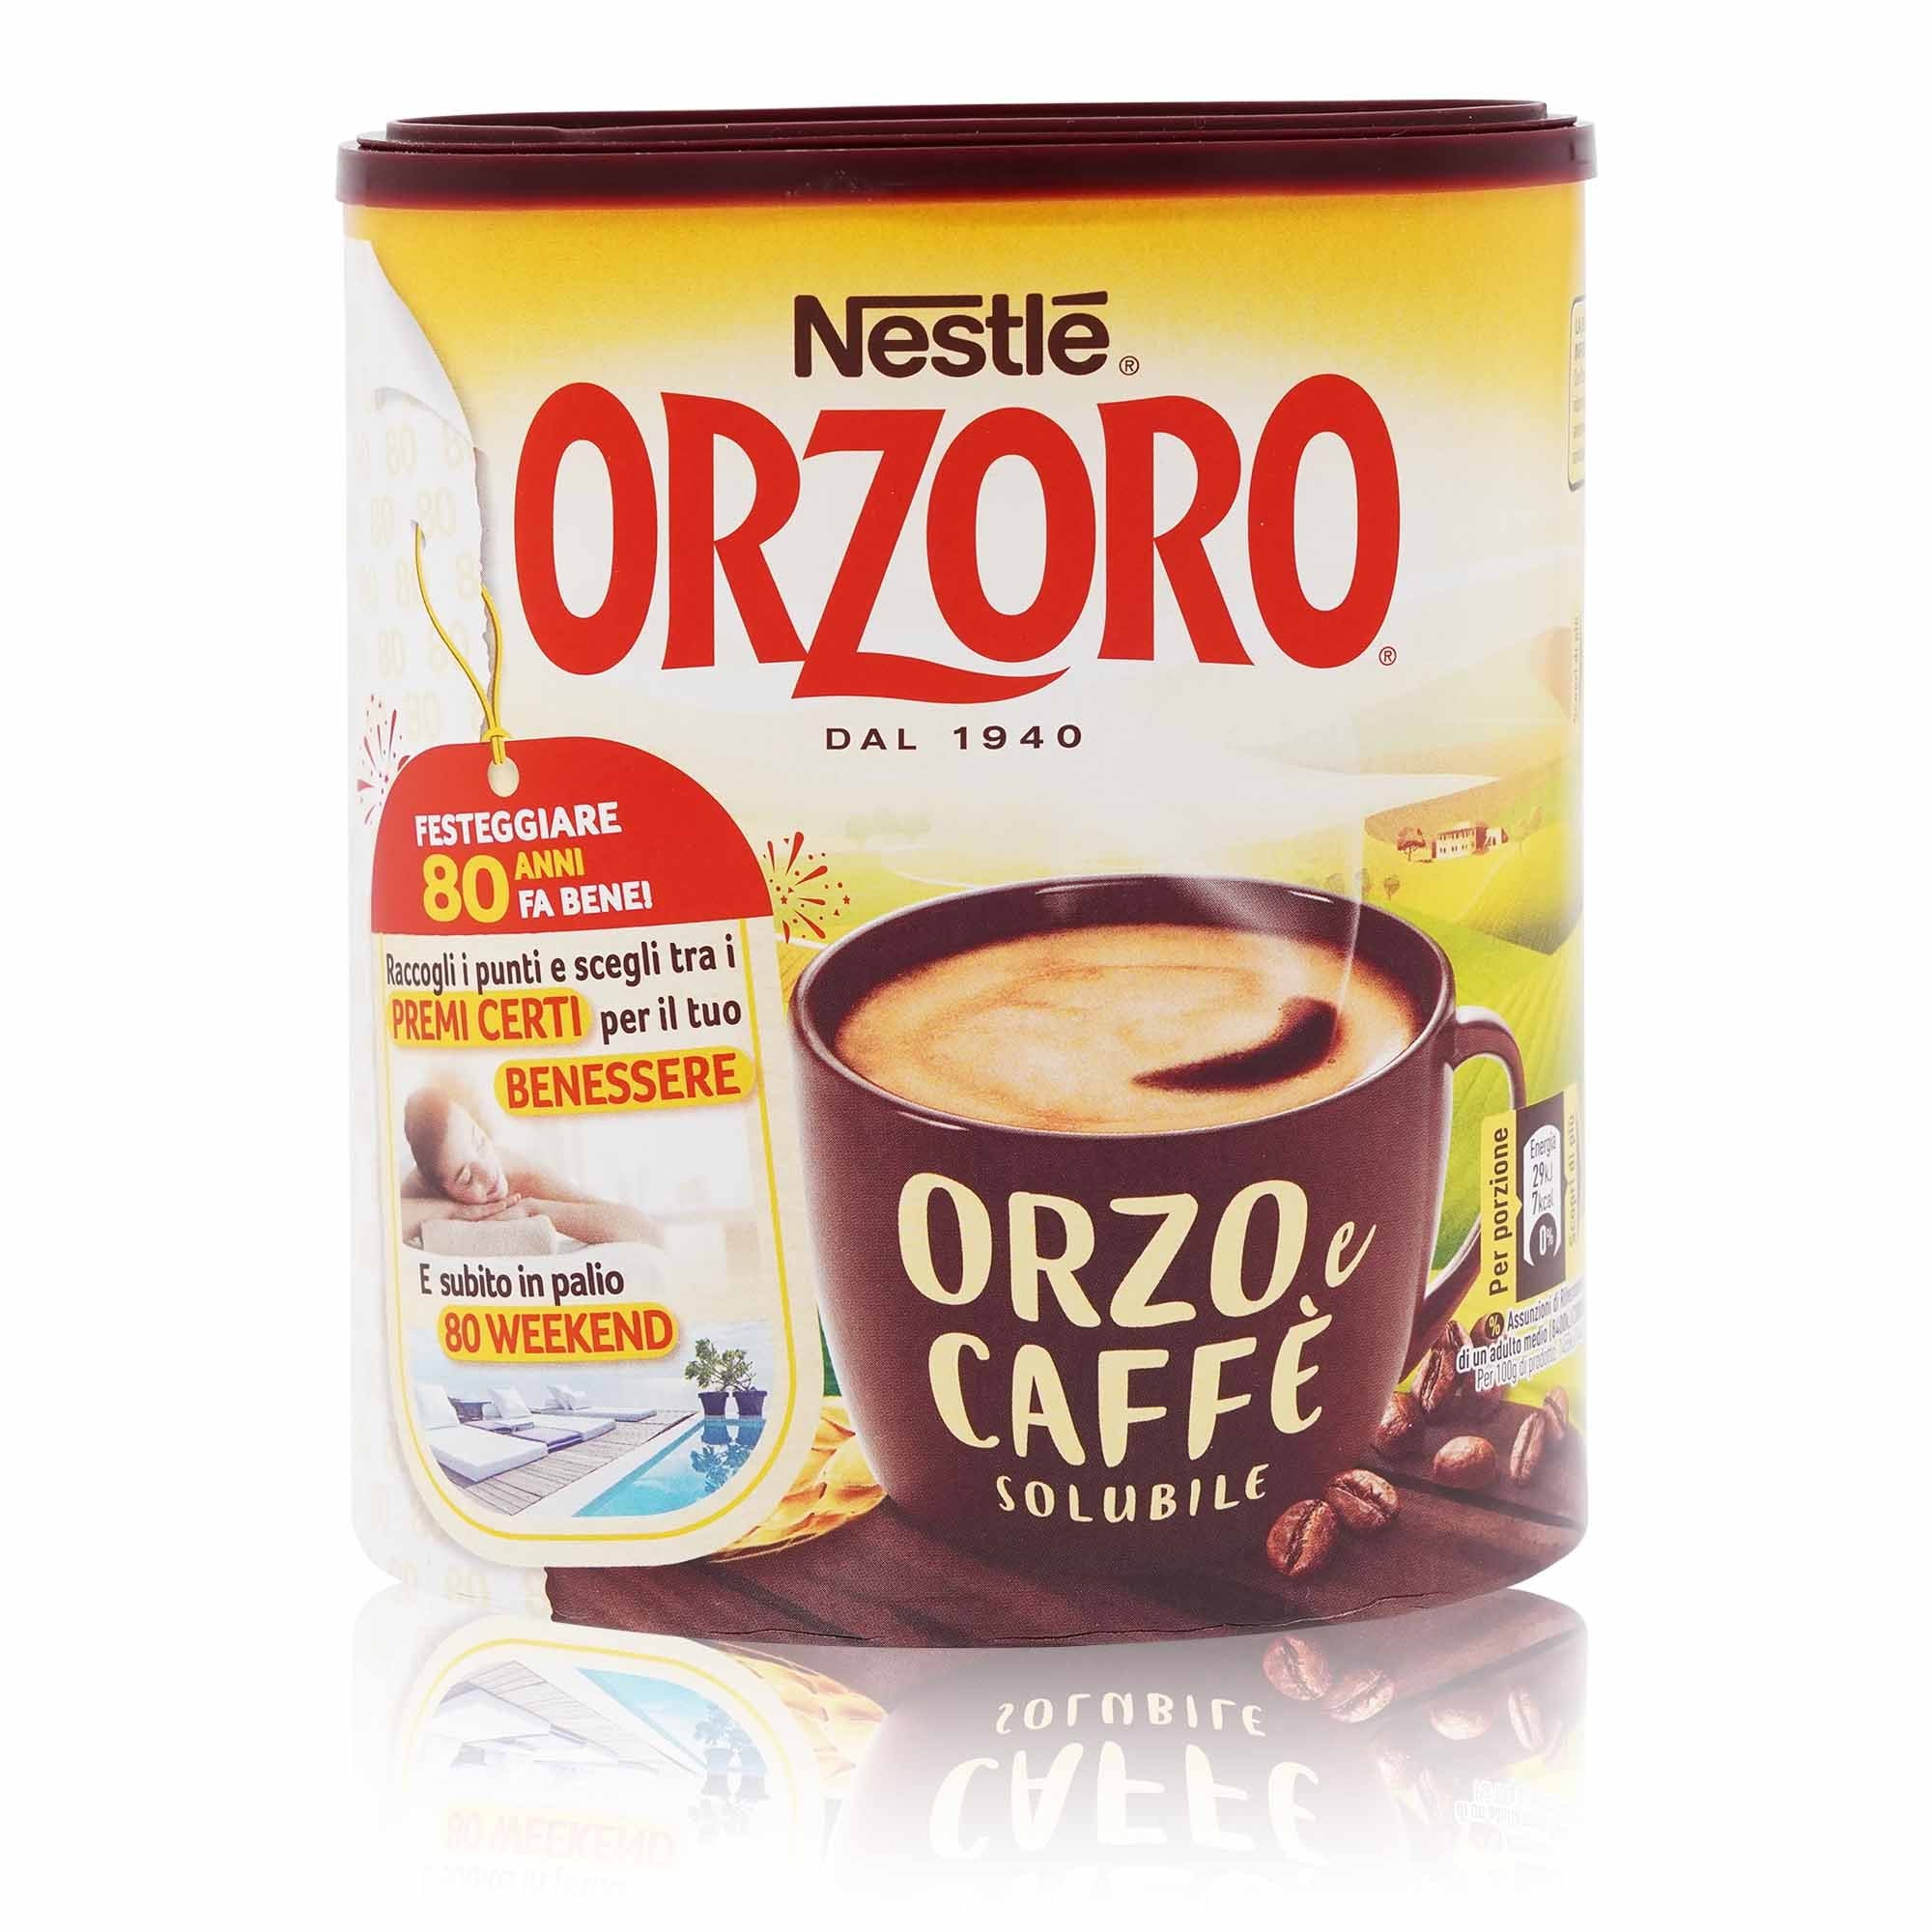 ORZORO Orzo e caffè solubile  – Gerste und Kaffee löslich ORZORO - 0,12kg